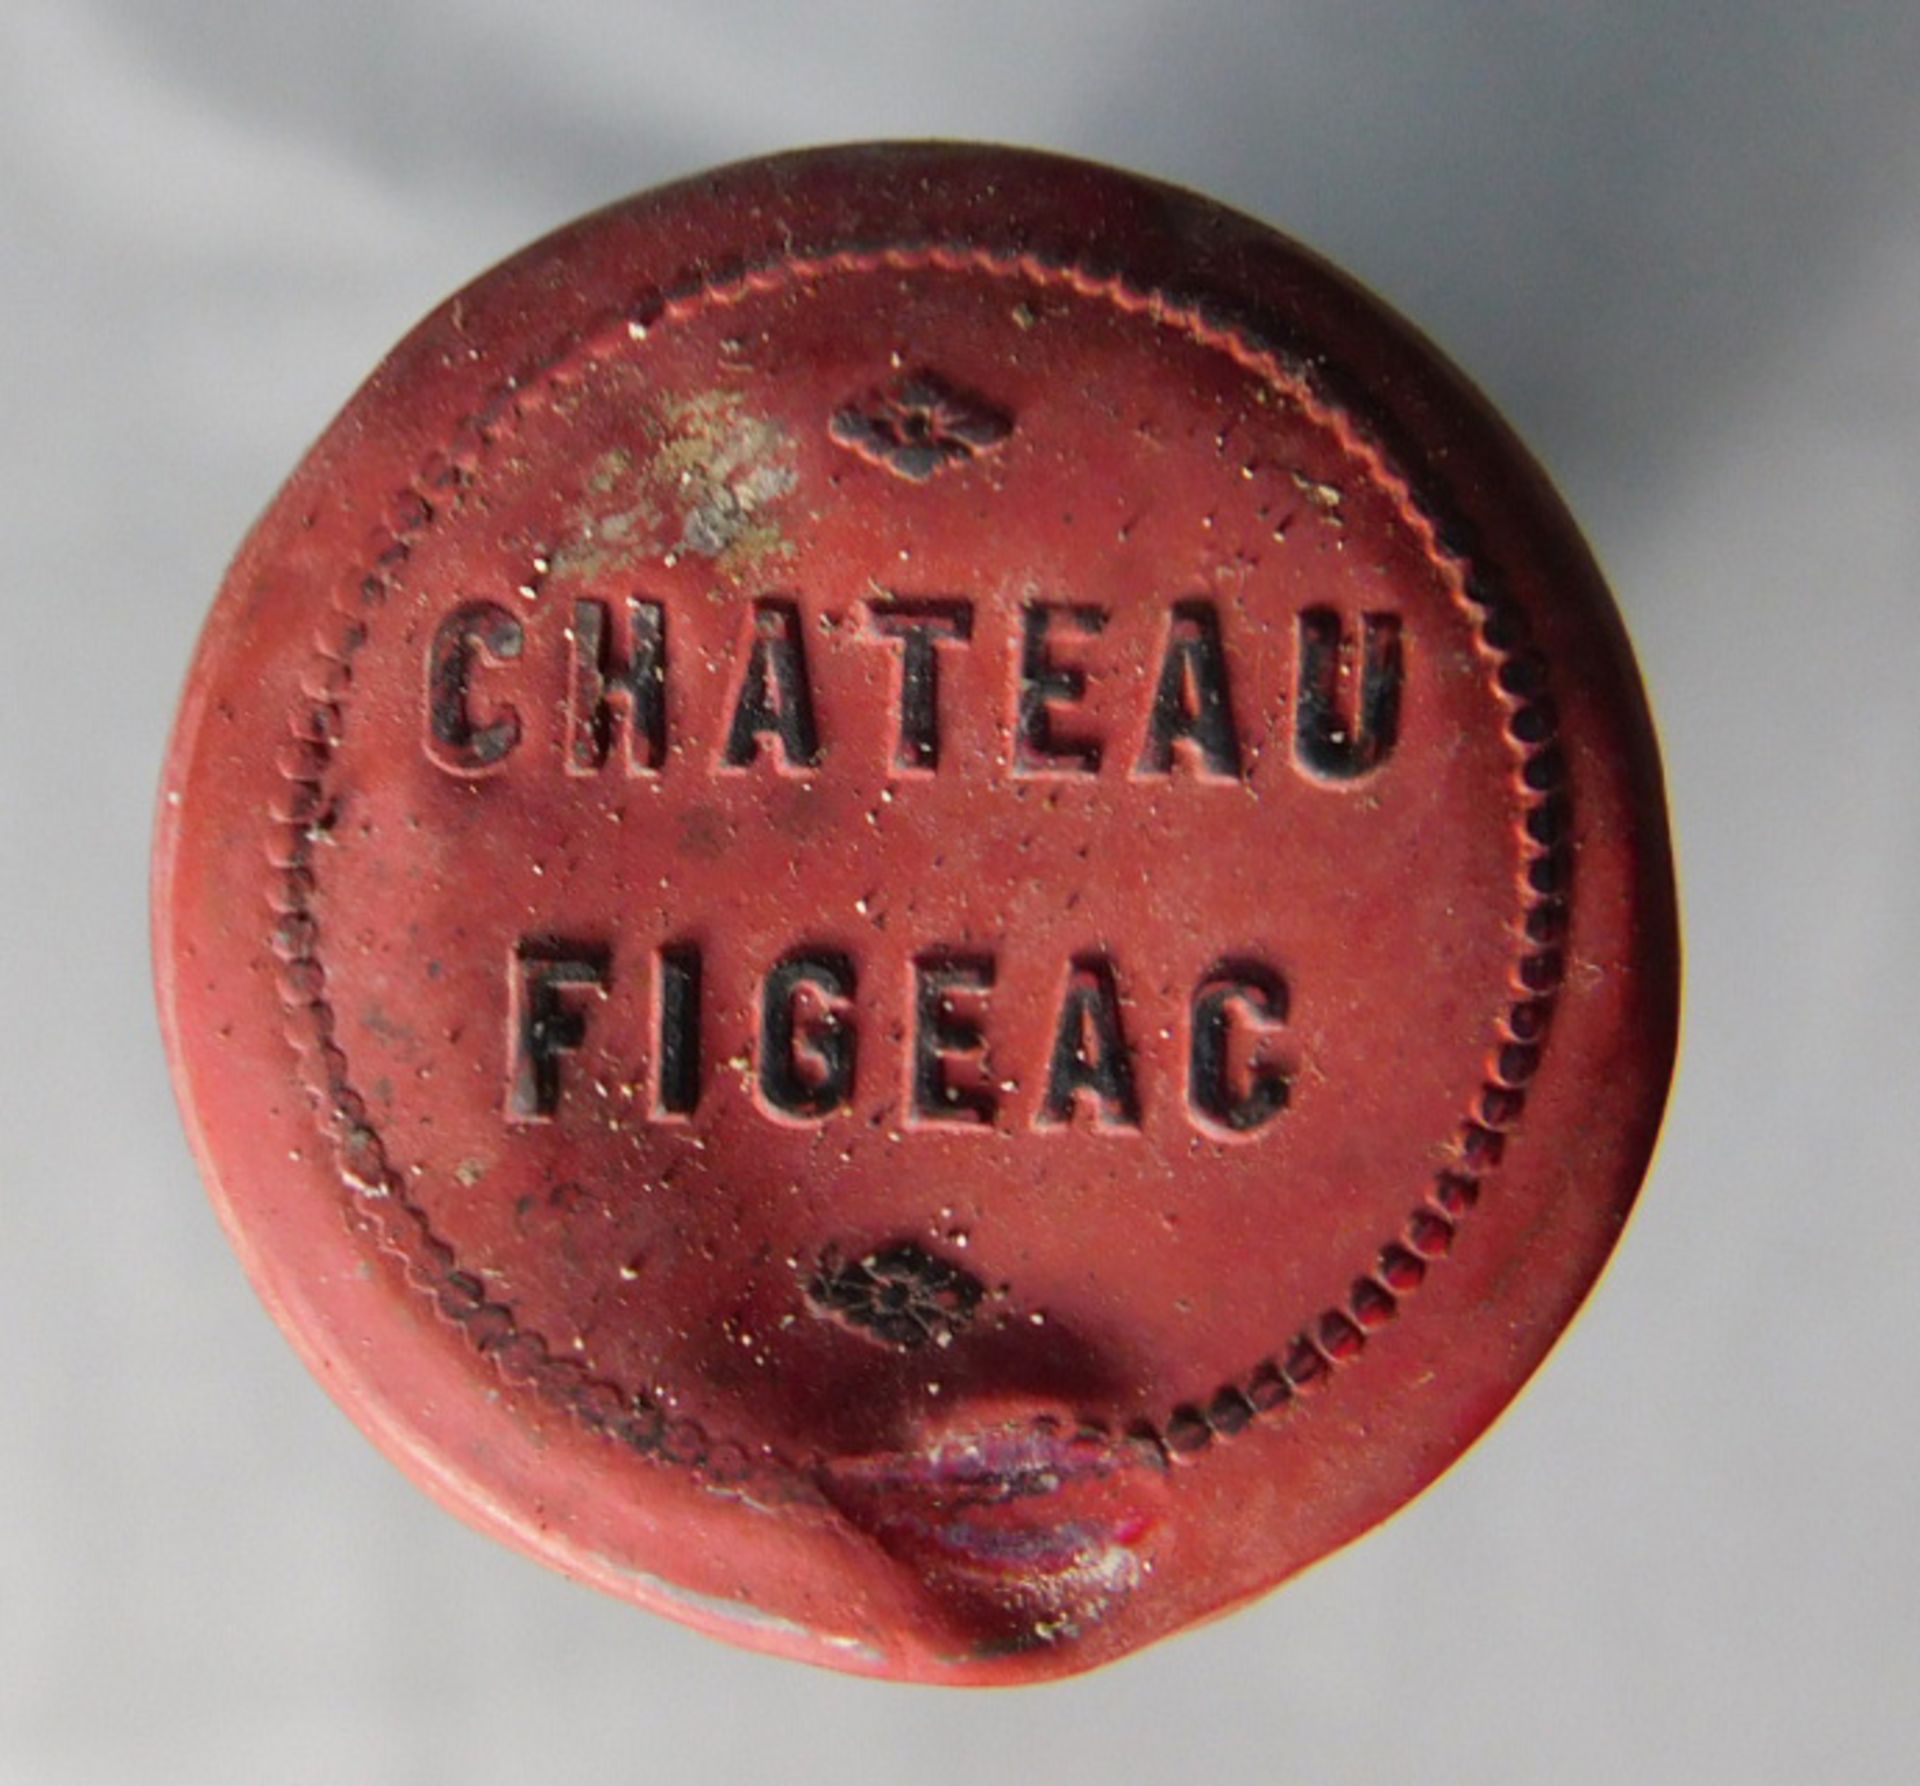 1973 Chateau - Figeac. Premier Grand Cru Classé. - Image 4 of 7